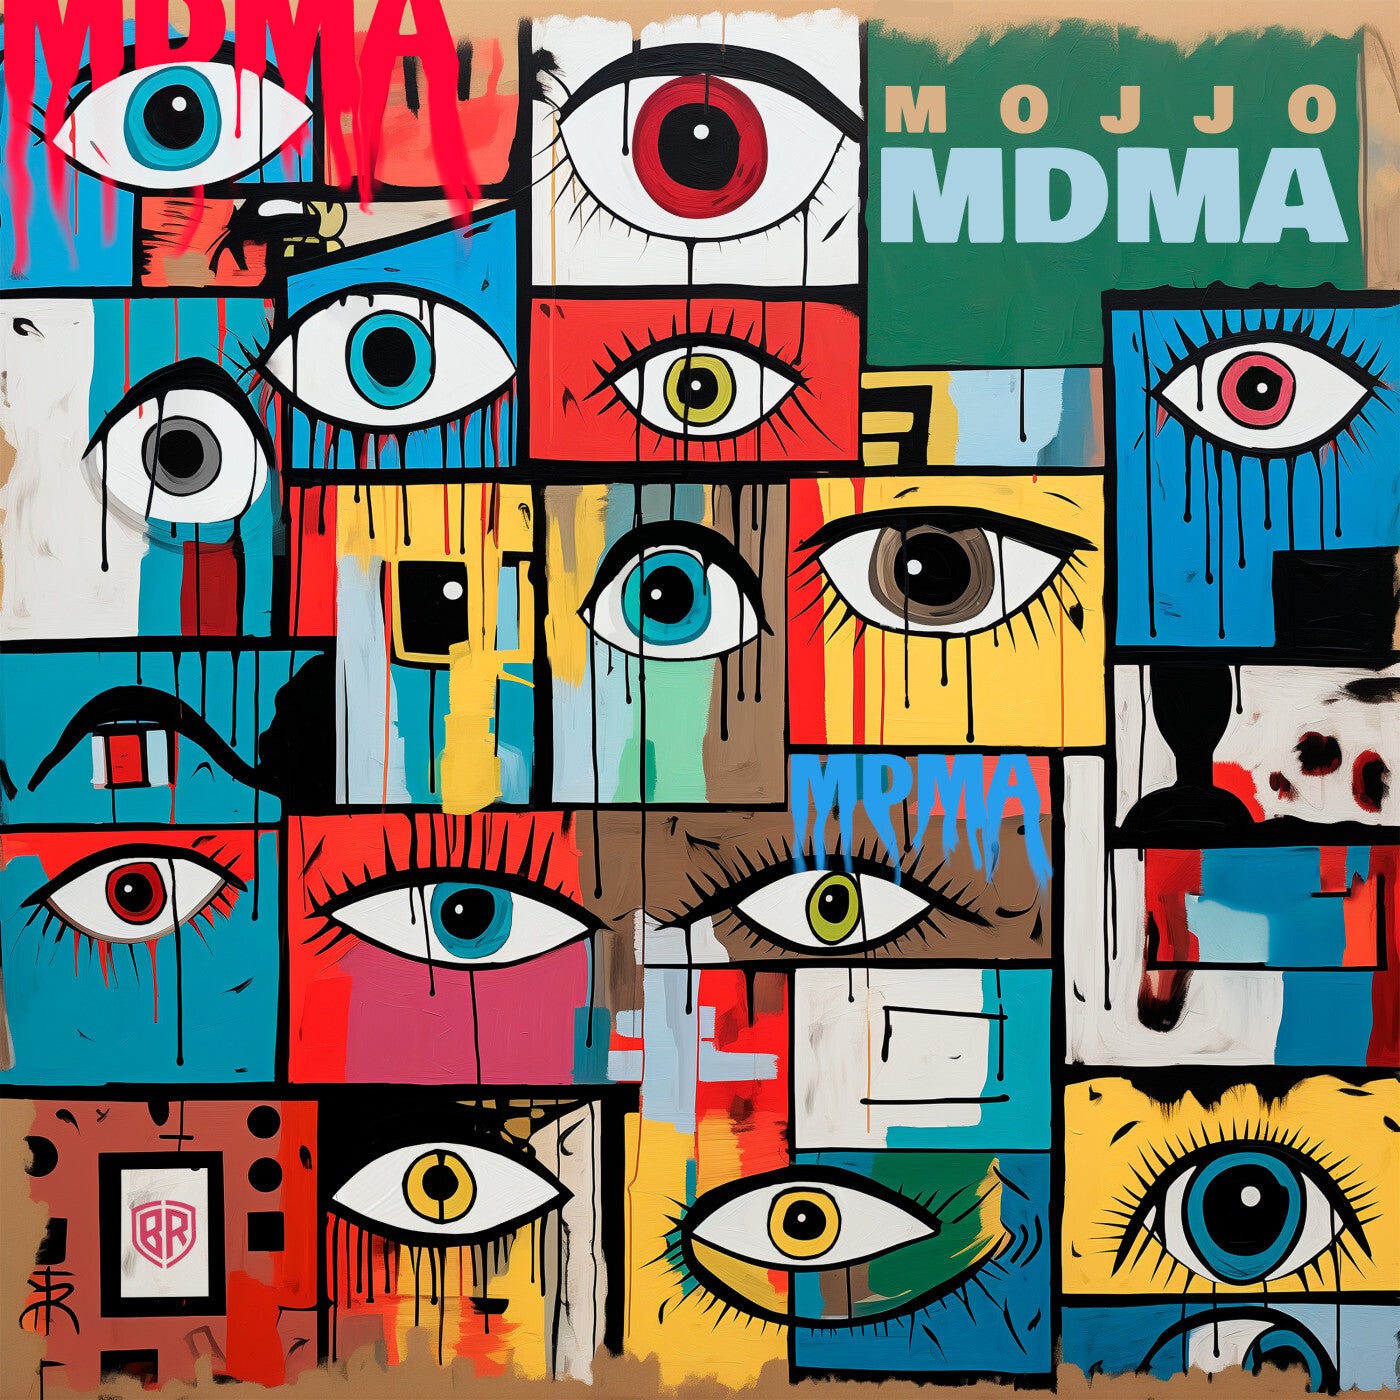 image cover: Mojjo - MDMA on Braslive Records